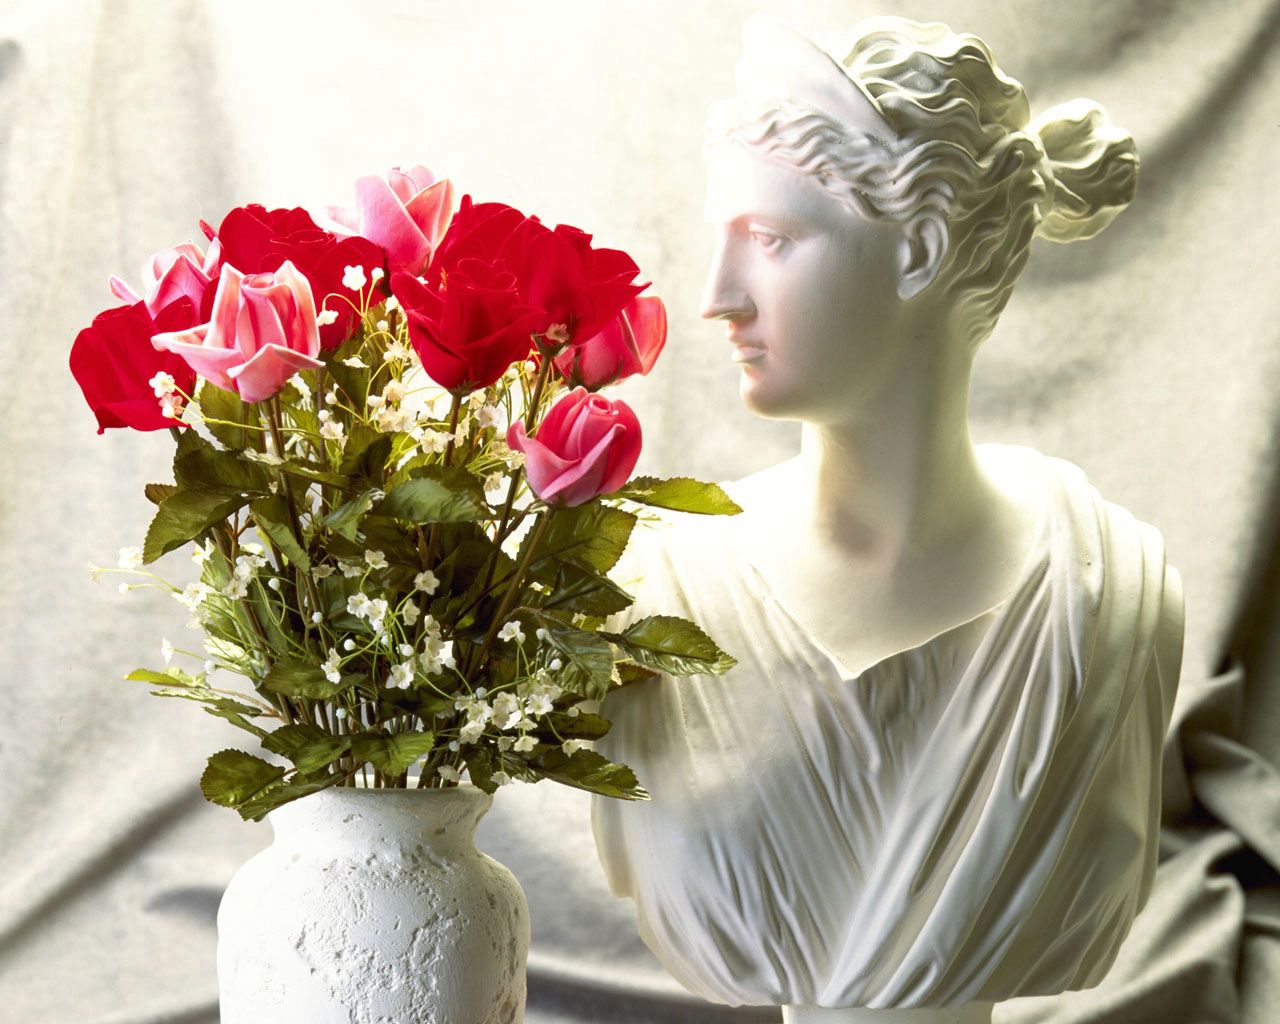 141839 免費下載壁紙 花卉, 玫瑰, 花束, 花瓶, 瓦萨, 摔碎, 半身像 屏保和圖片